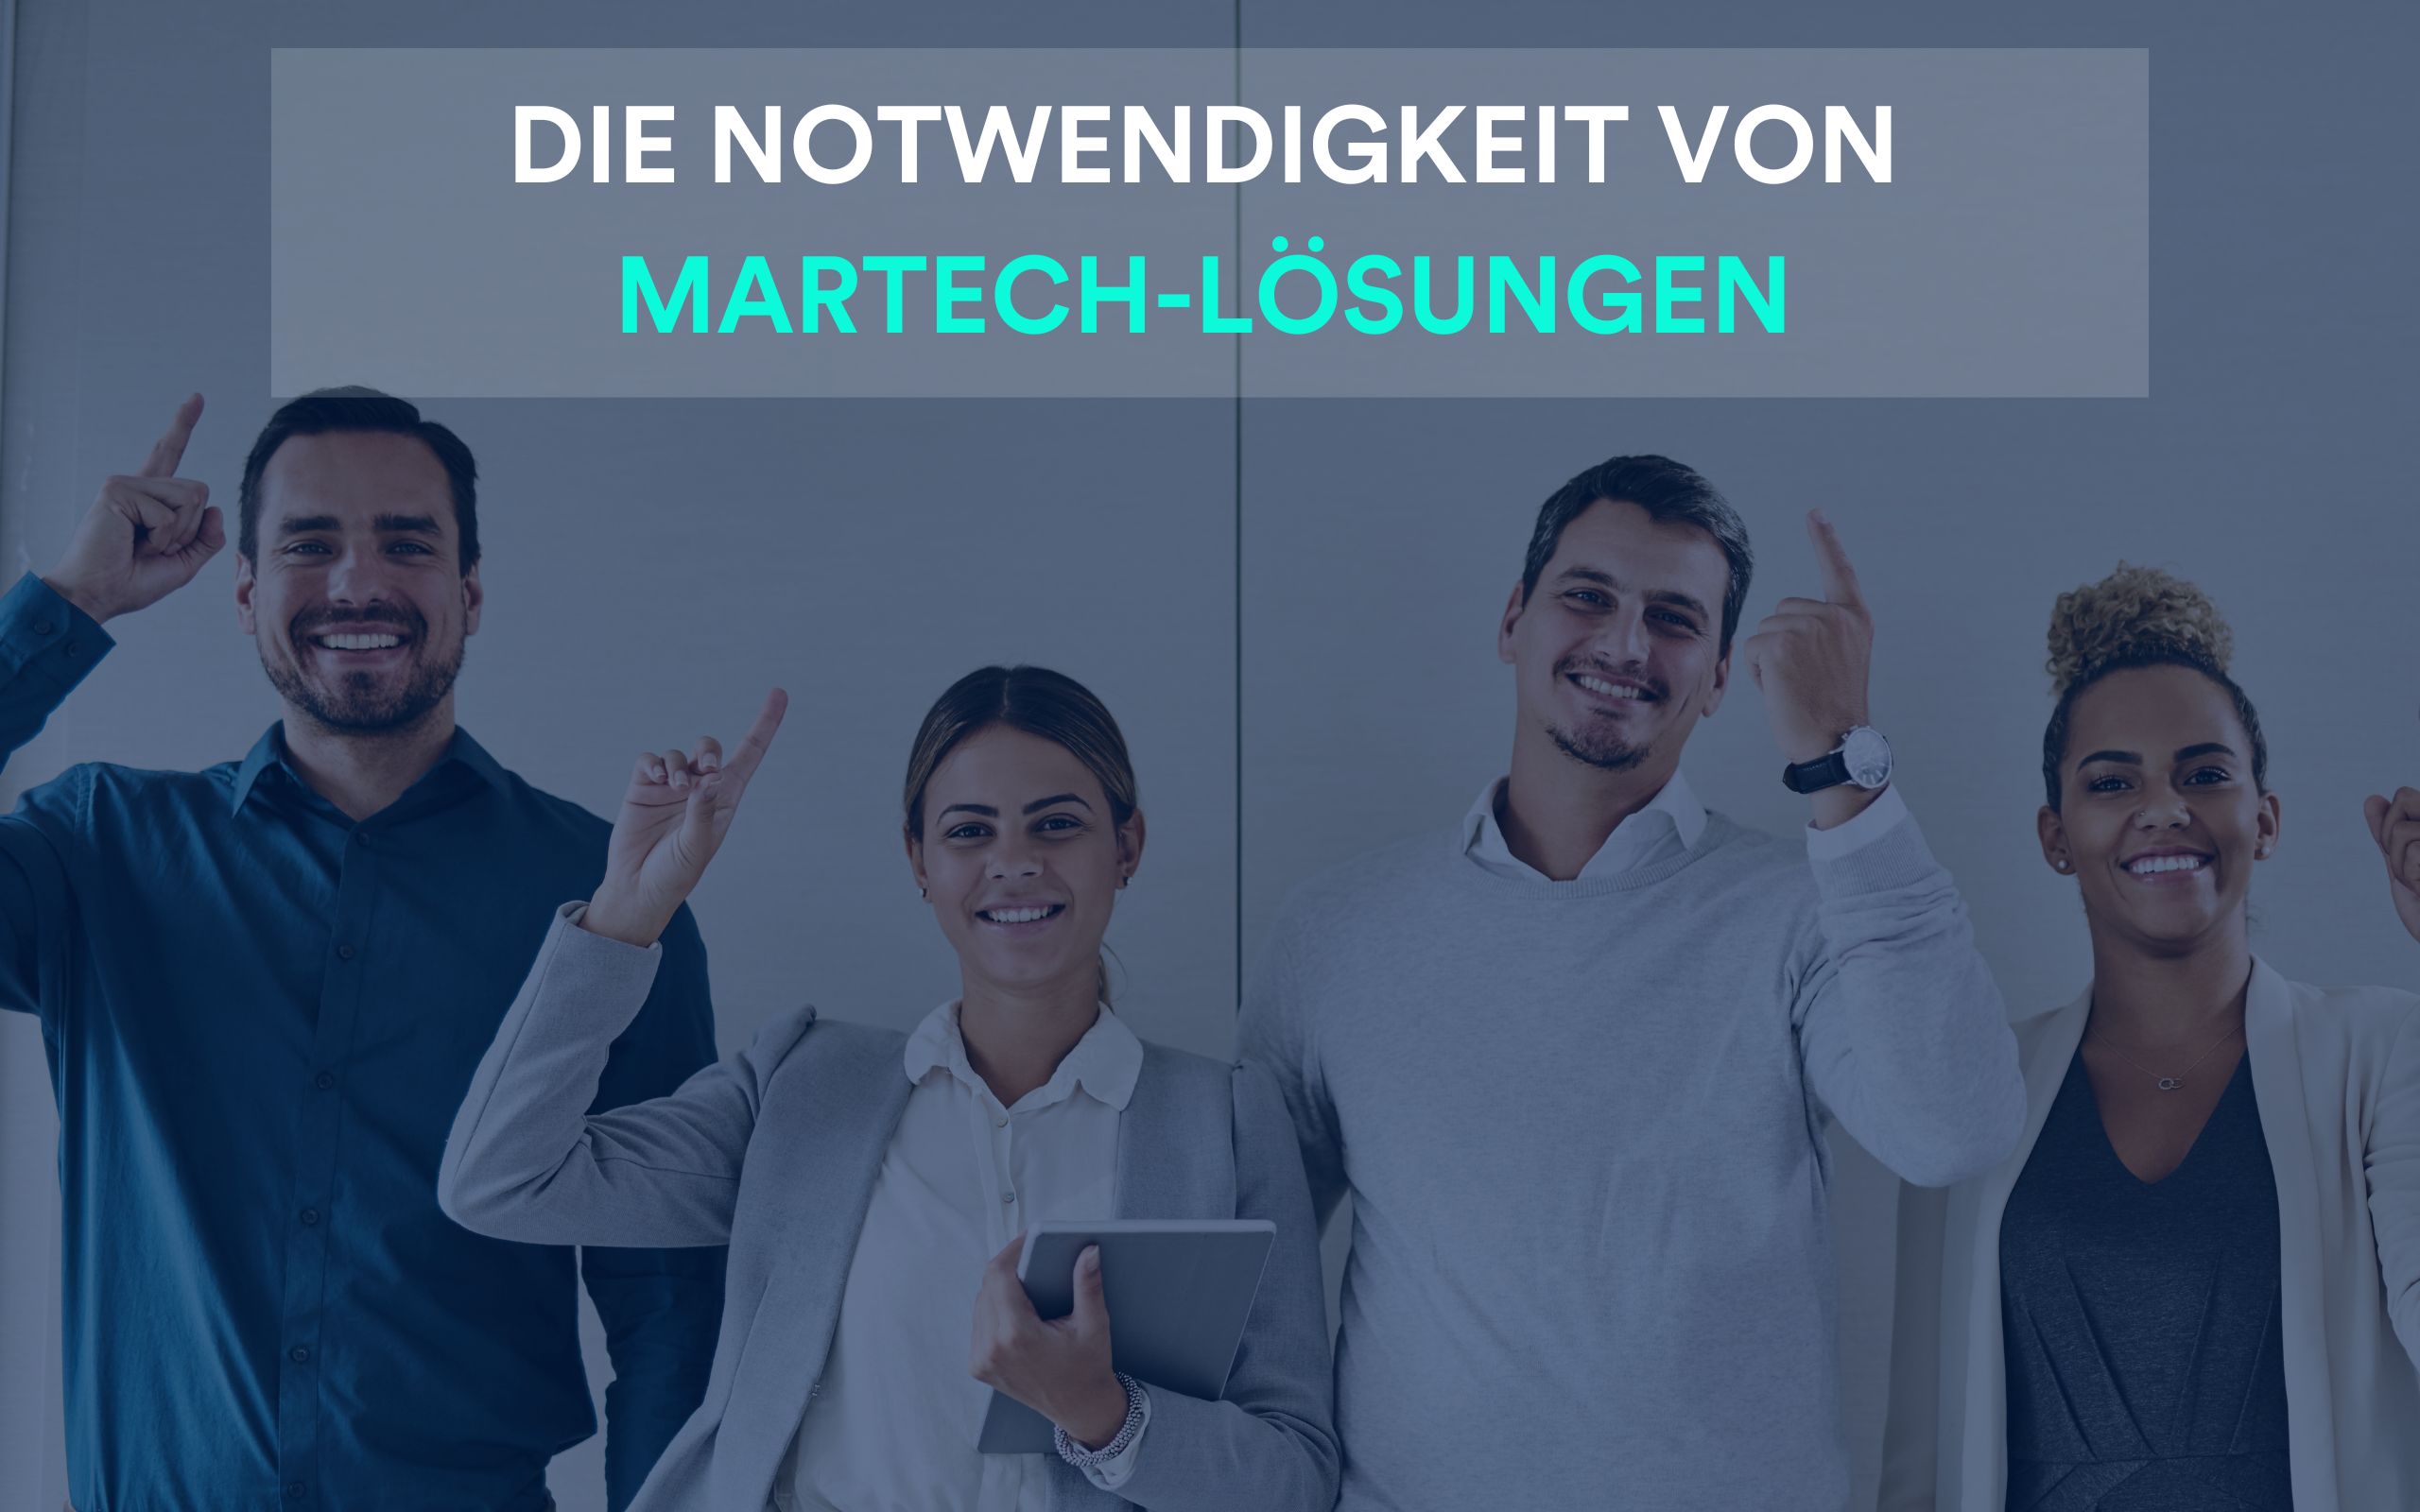 MarTech-Lösungen wie Product Information Management und Digital Publishing